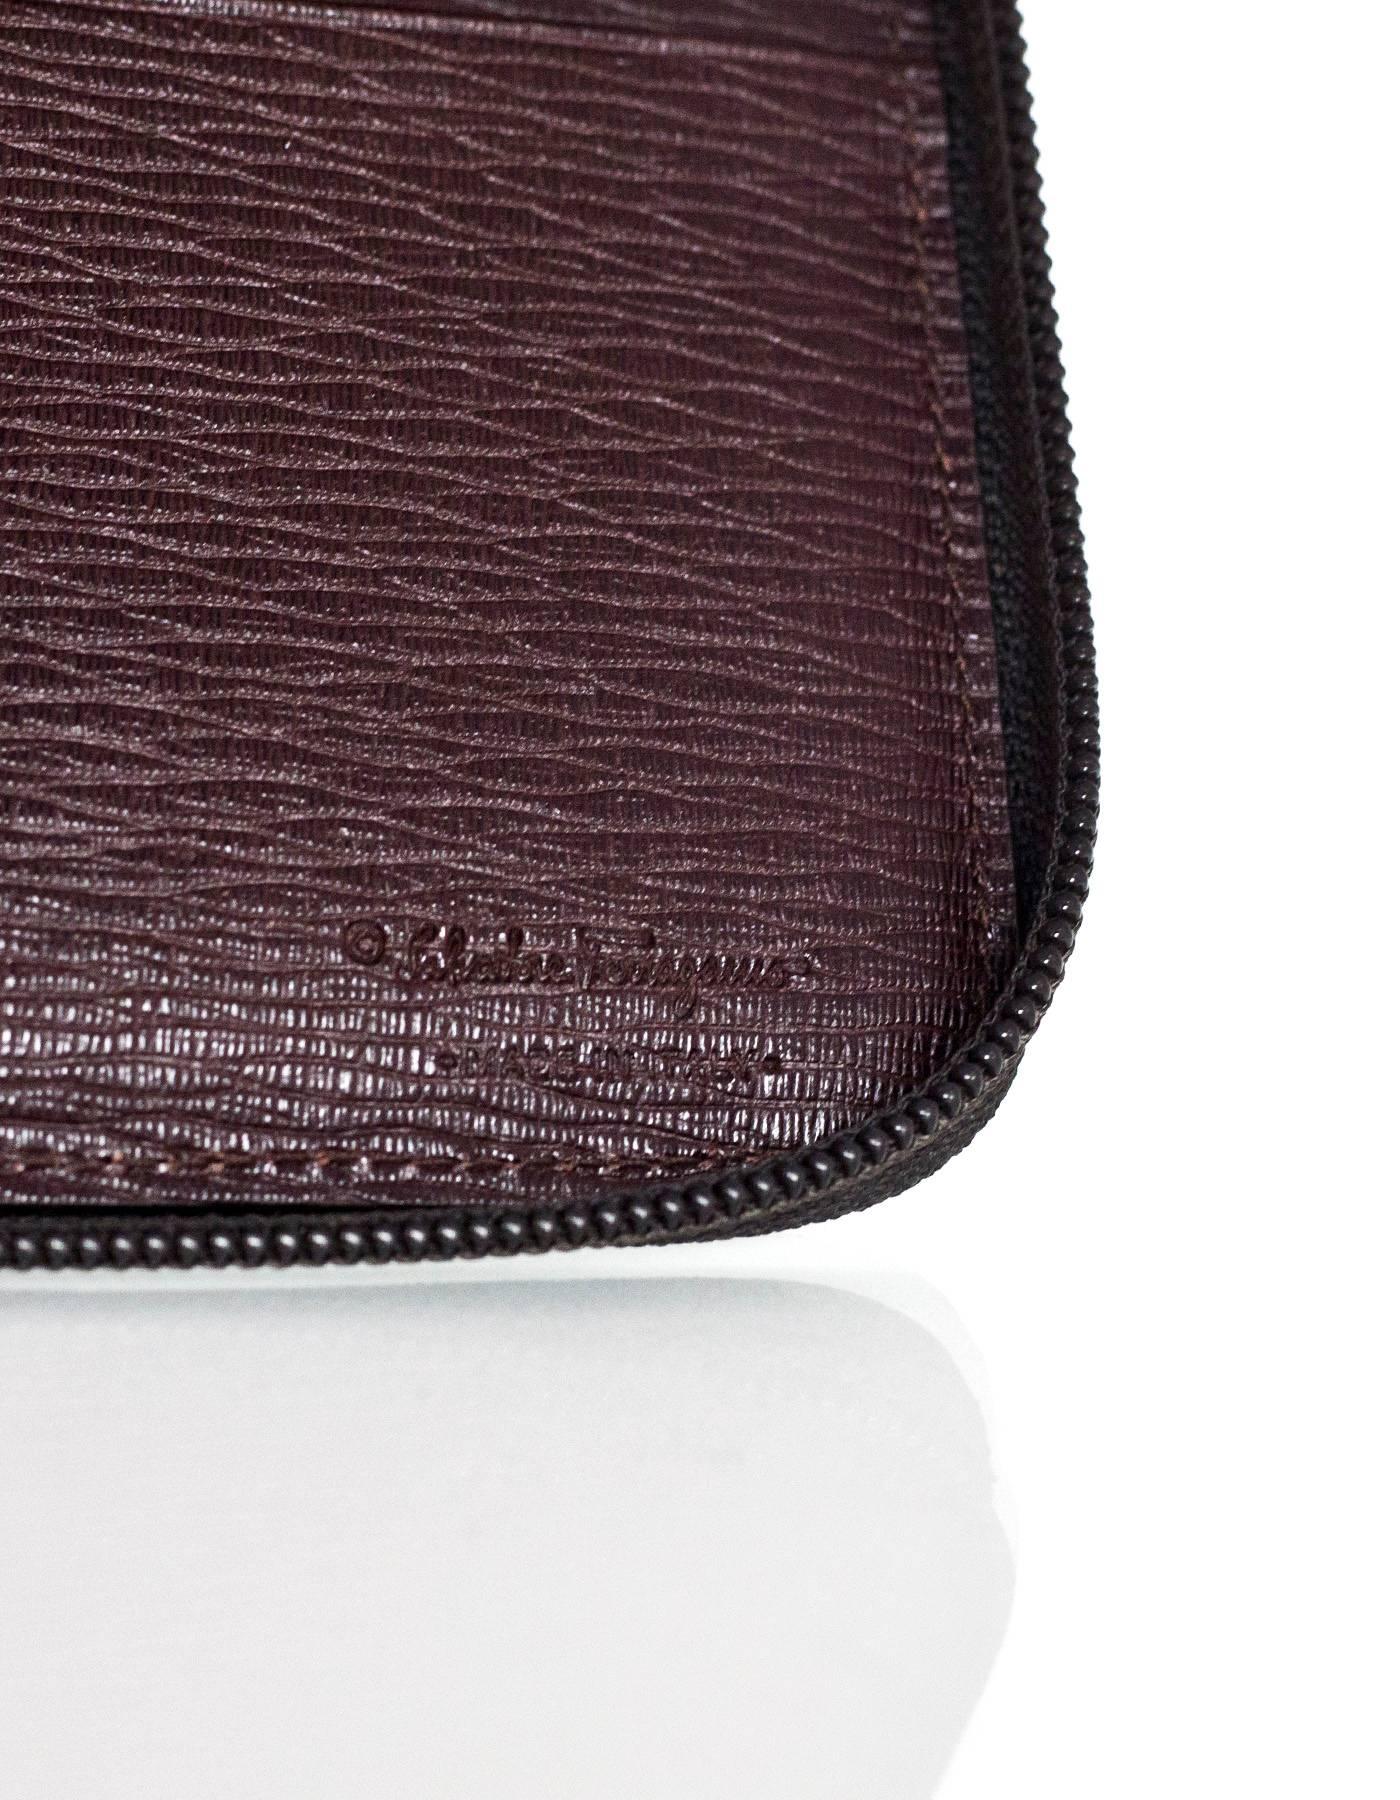 Salvatore Ferragamo Brown Leather Zip Around Large Travel Wallet rt. $390 1